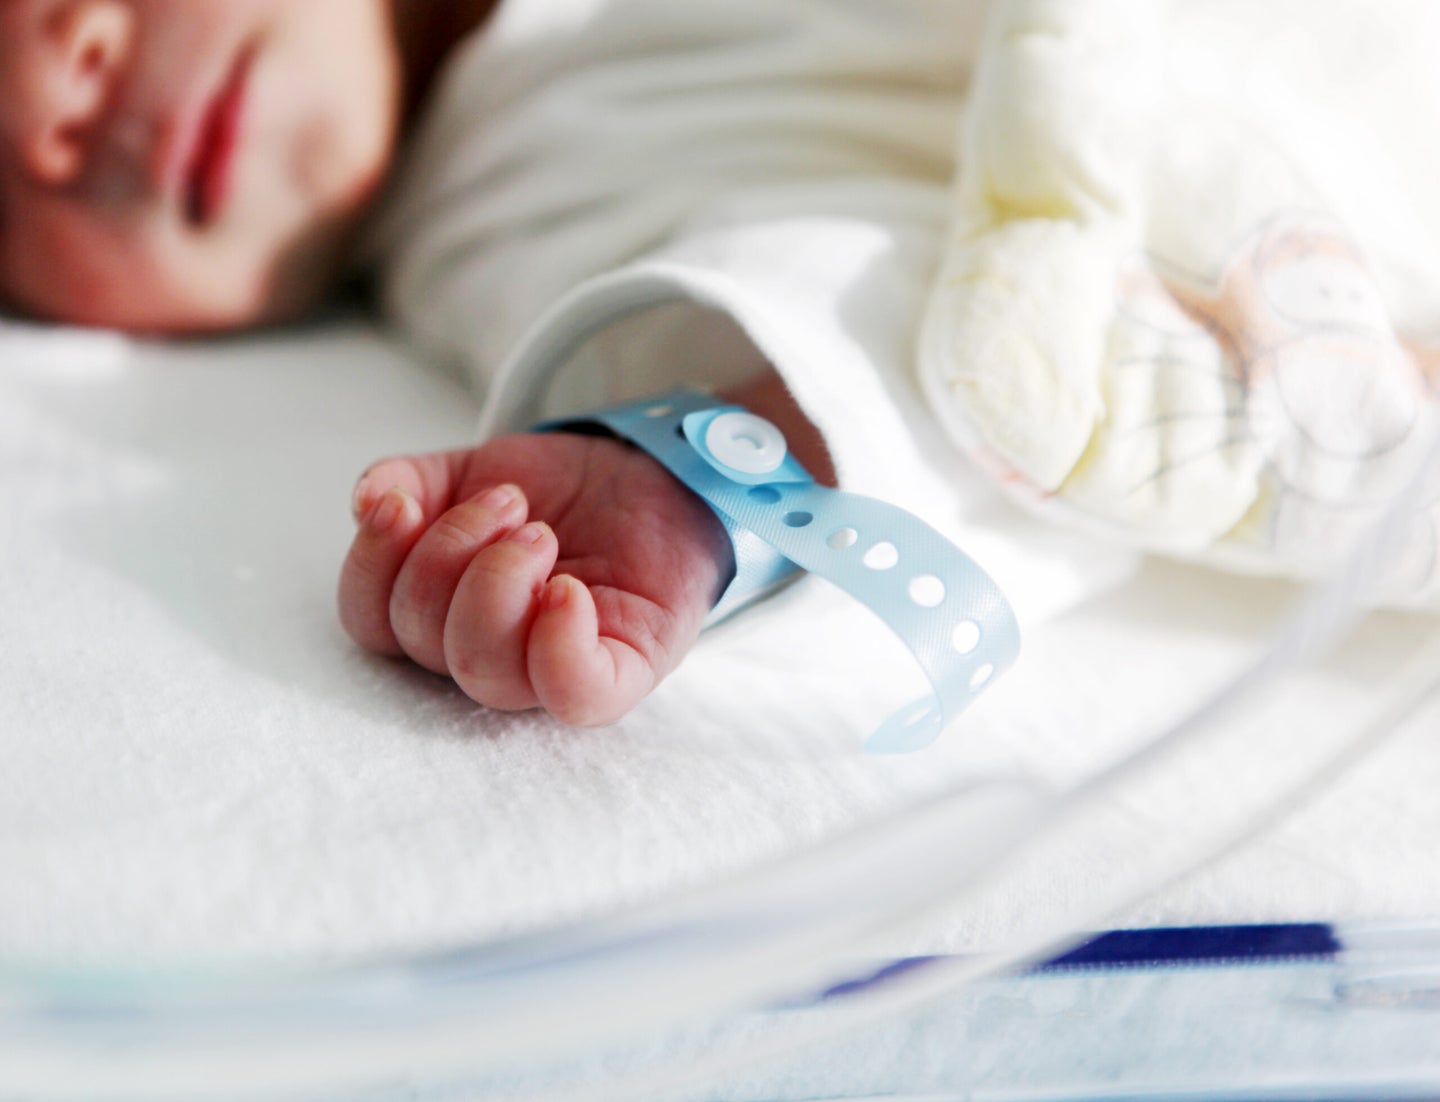 a newborn baby's wrist with a hospital bracelet on it